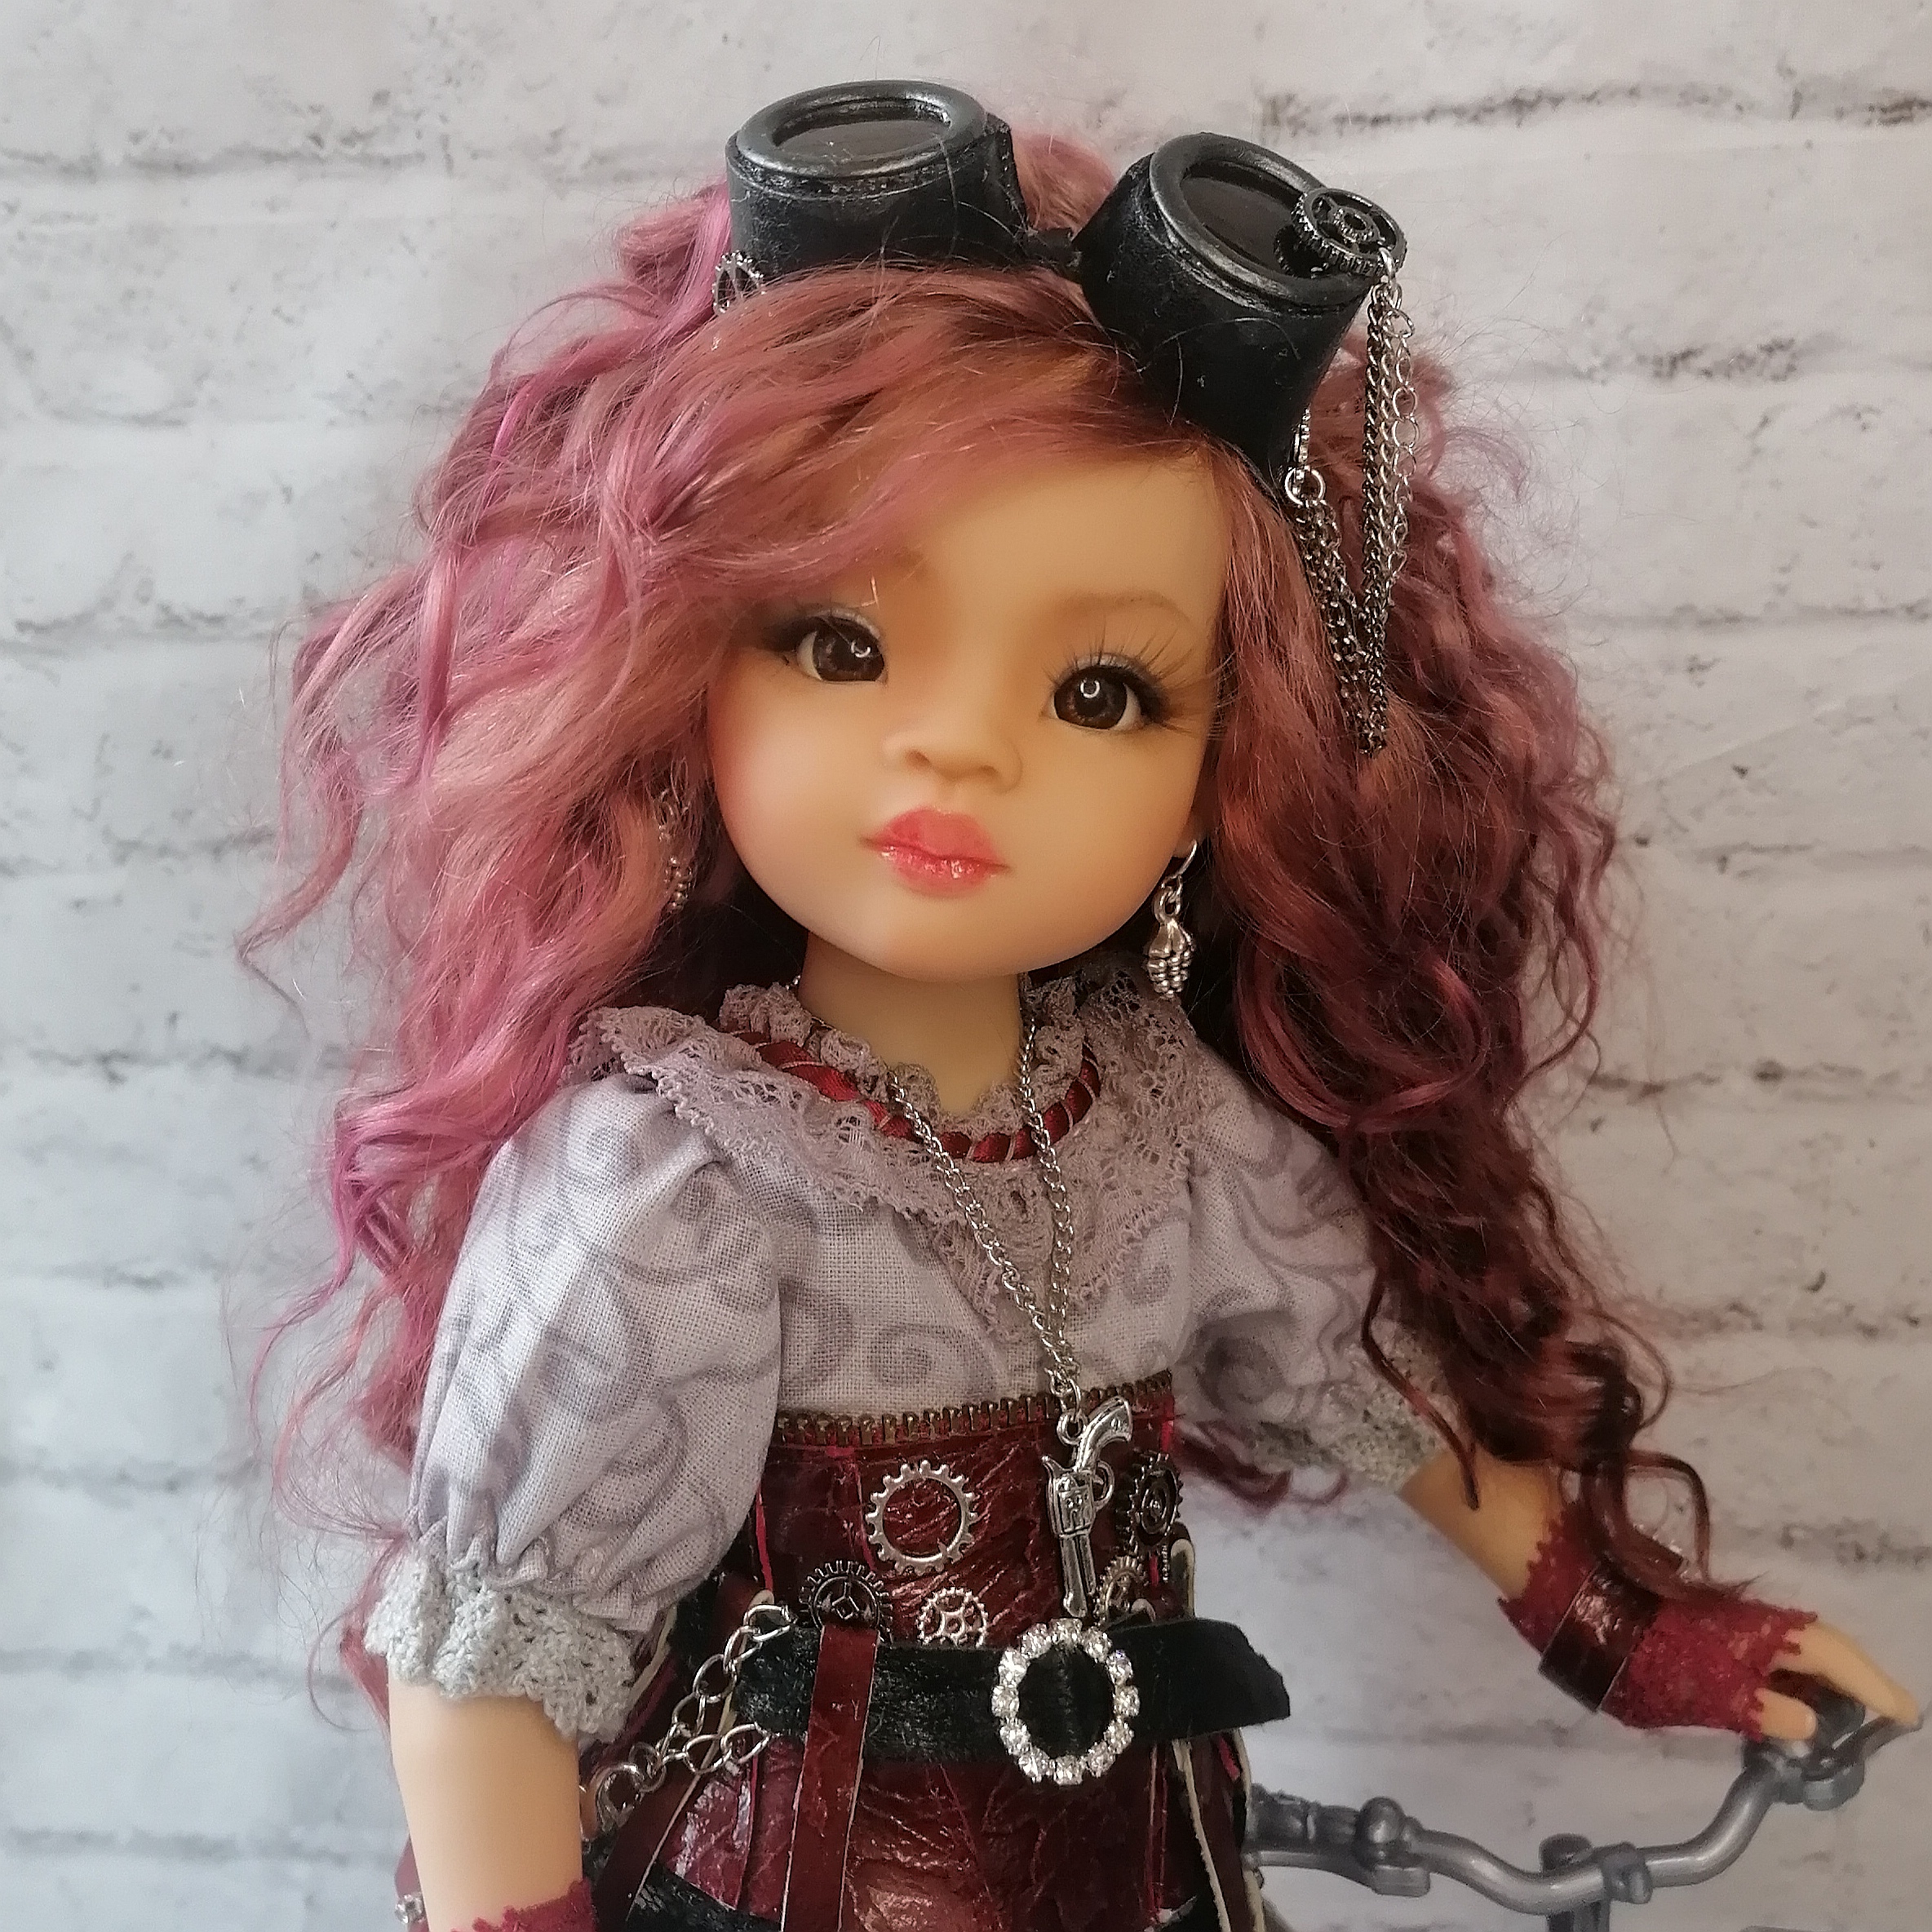 OOAK doll Phicen 1/6, Pamela. Complete set in steampunk style